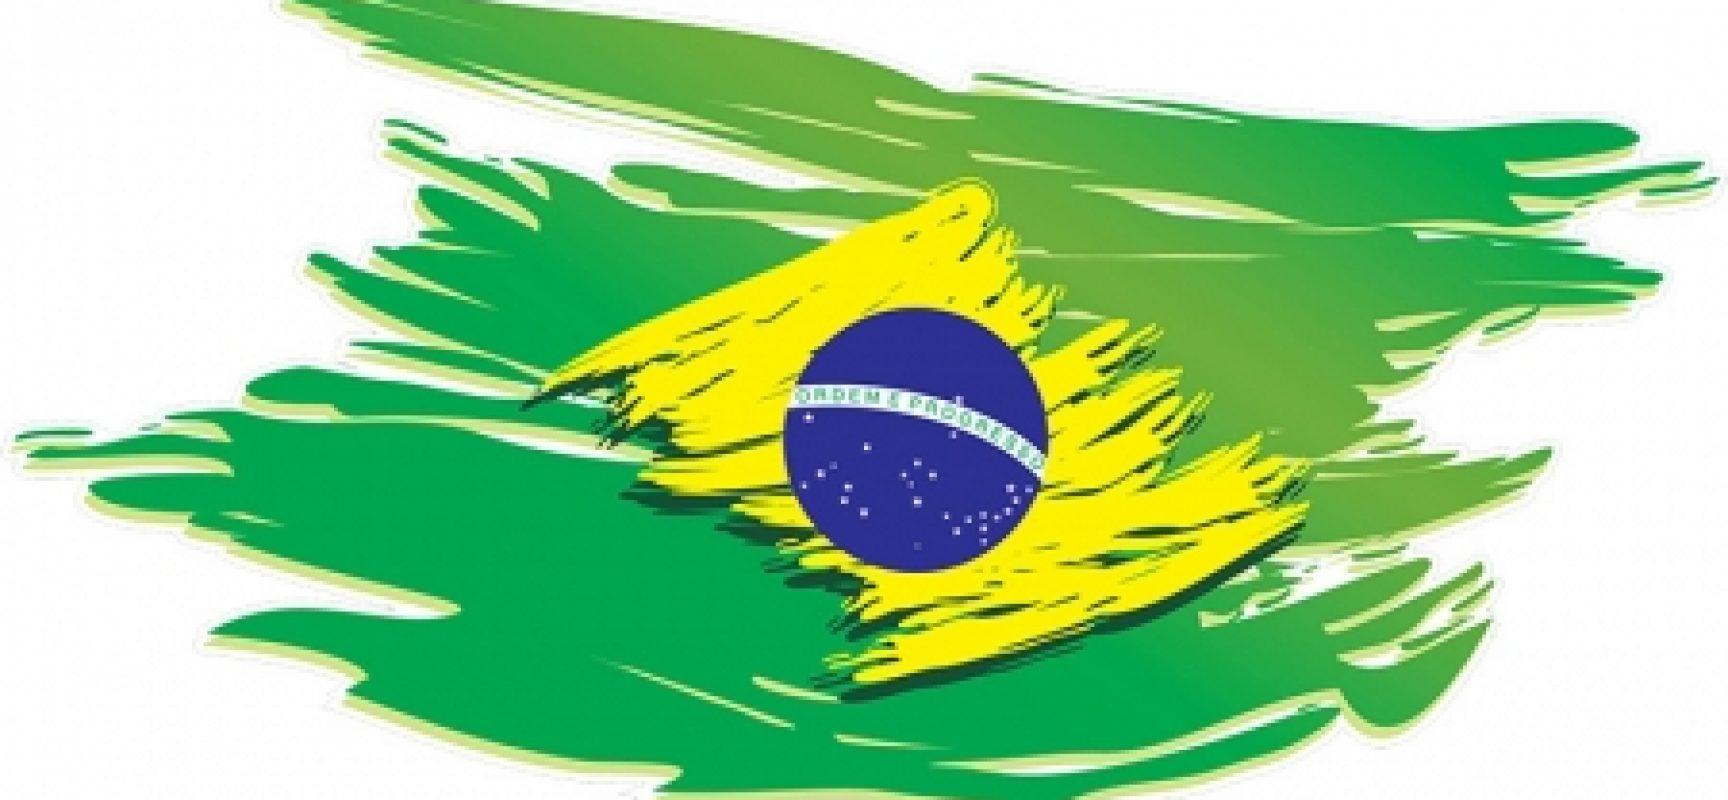 ARTIGO: “O Brasil não é um país sério”